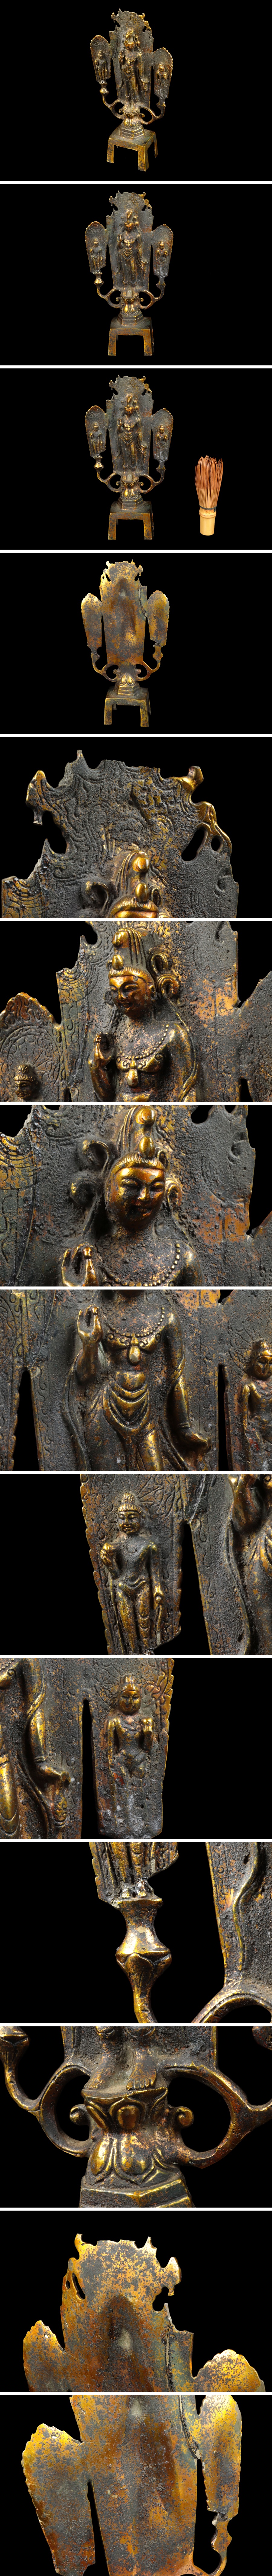 ドライブ仏教美術 銅器 塗金 菩薩像 仏像 置物 高さ:約23cm 骨董品 美術品 0254tfz 仏像